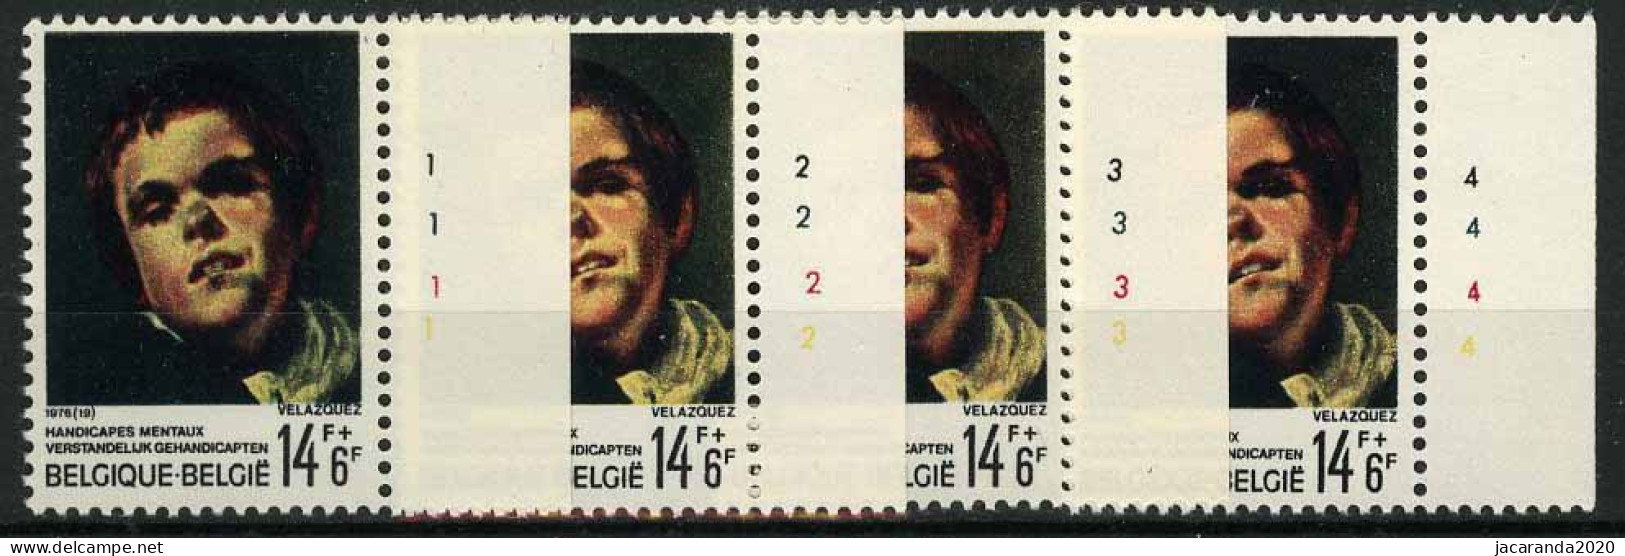 België 1836 - Plaatnummers 1-2-3-4 - 1971-1980